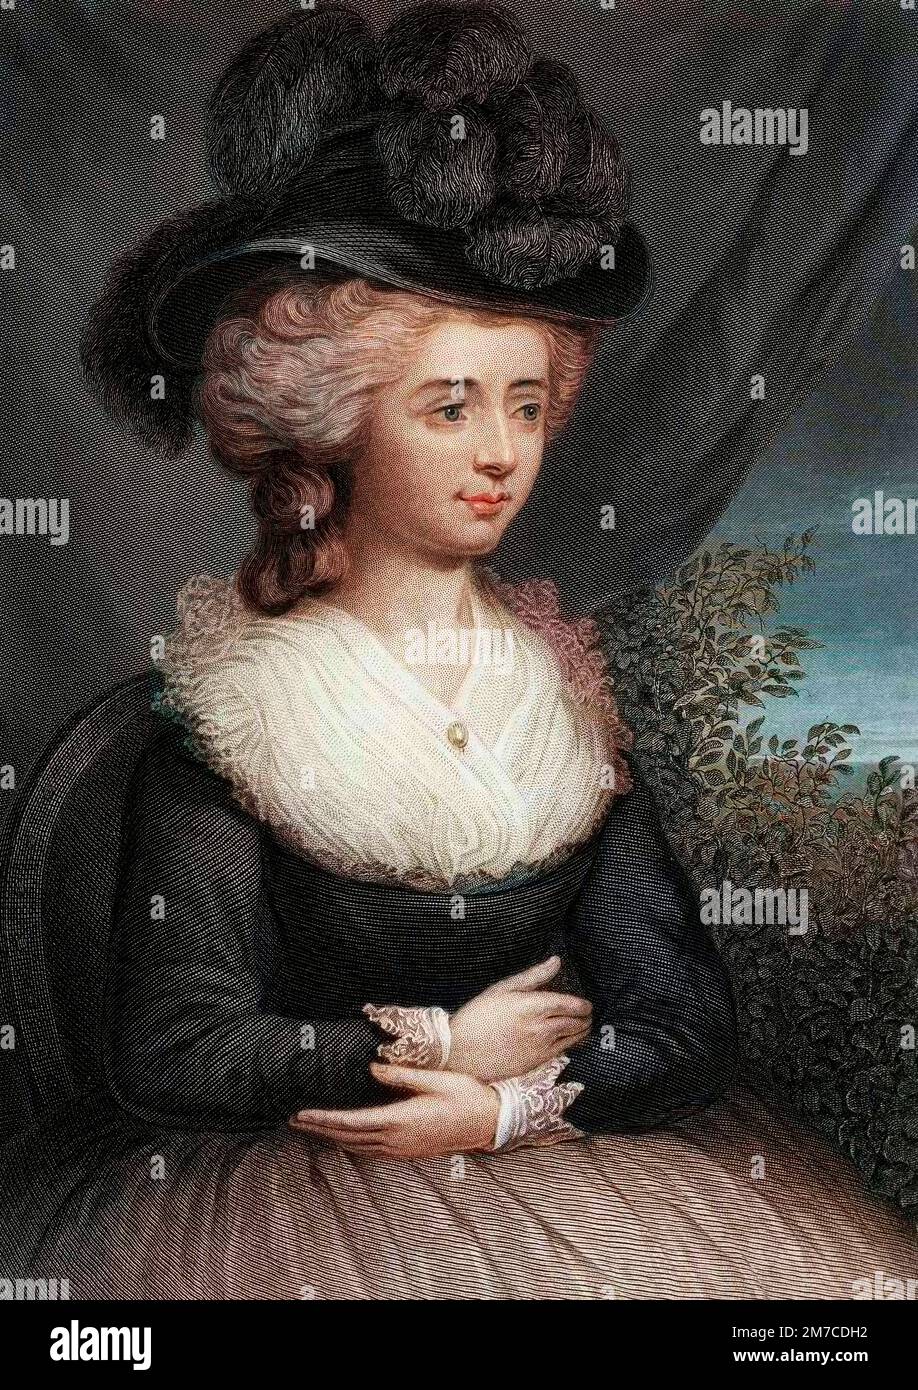 Portrait de Madame d'Arblay, Fanny (Frances) Burney (1752-1840), ecrivain anglaise. Gravure d'apres le tableau de E. Burney Stockfoto